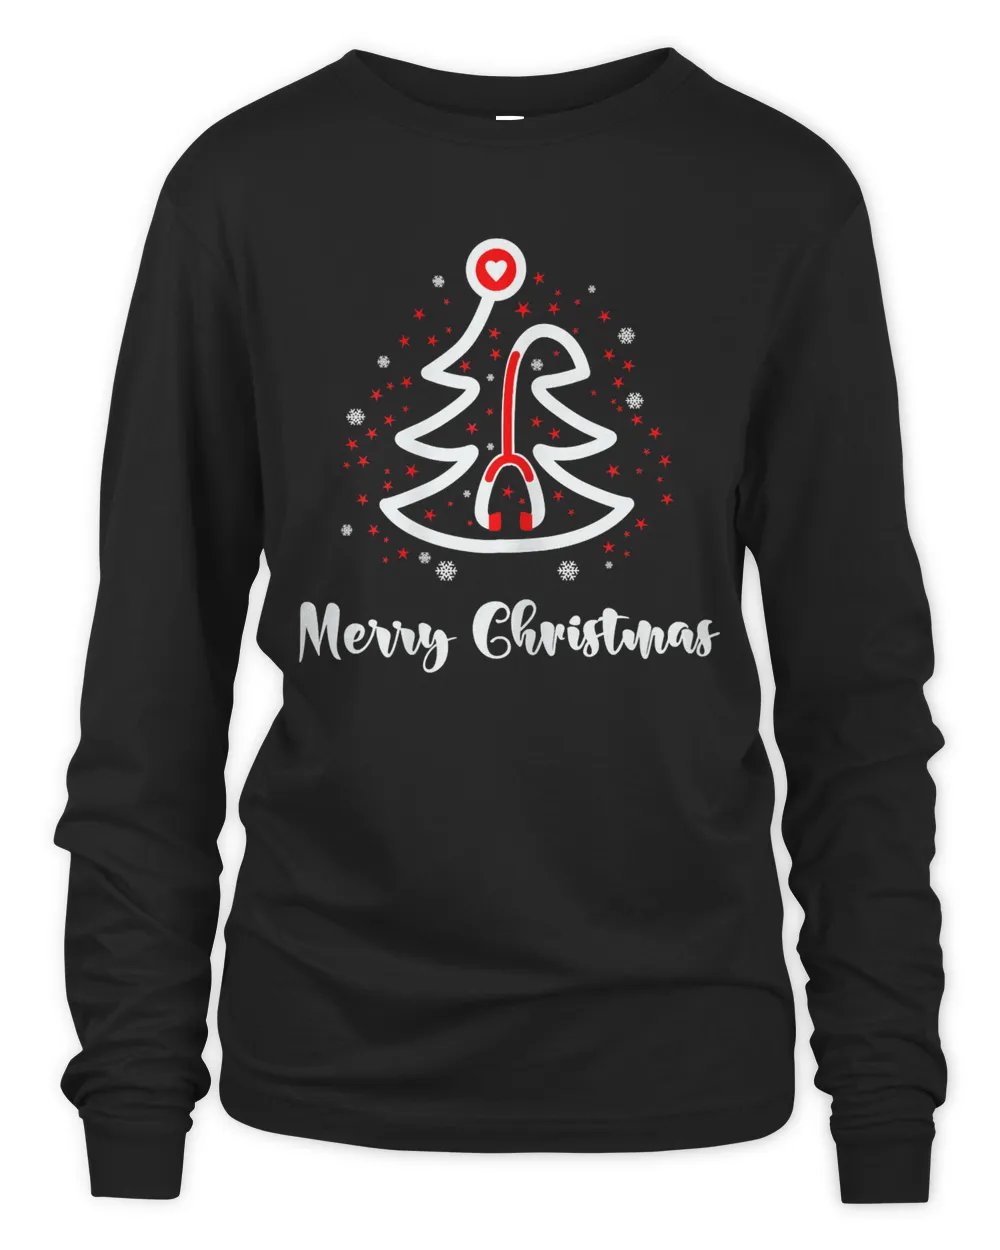 Womens Merry Christmas Stethoscope Nurse Christmas Gift Tree Xmas T-Shirt